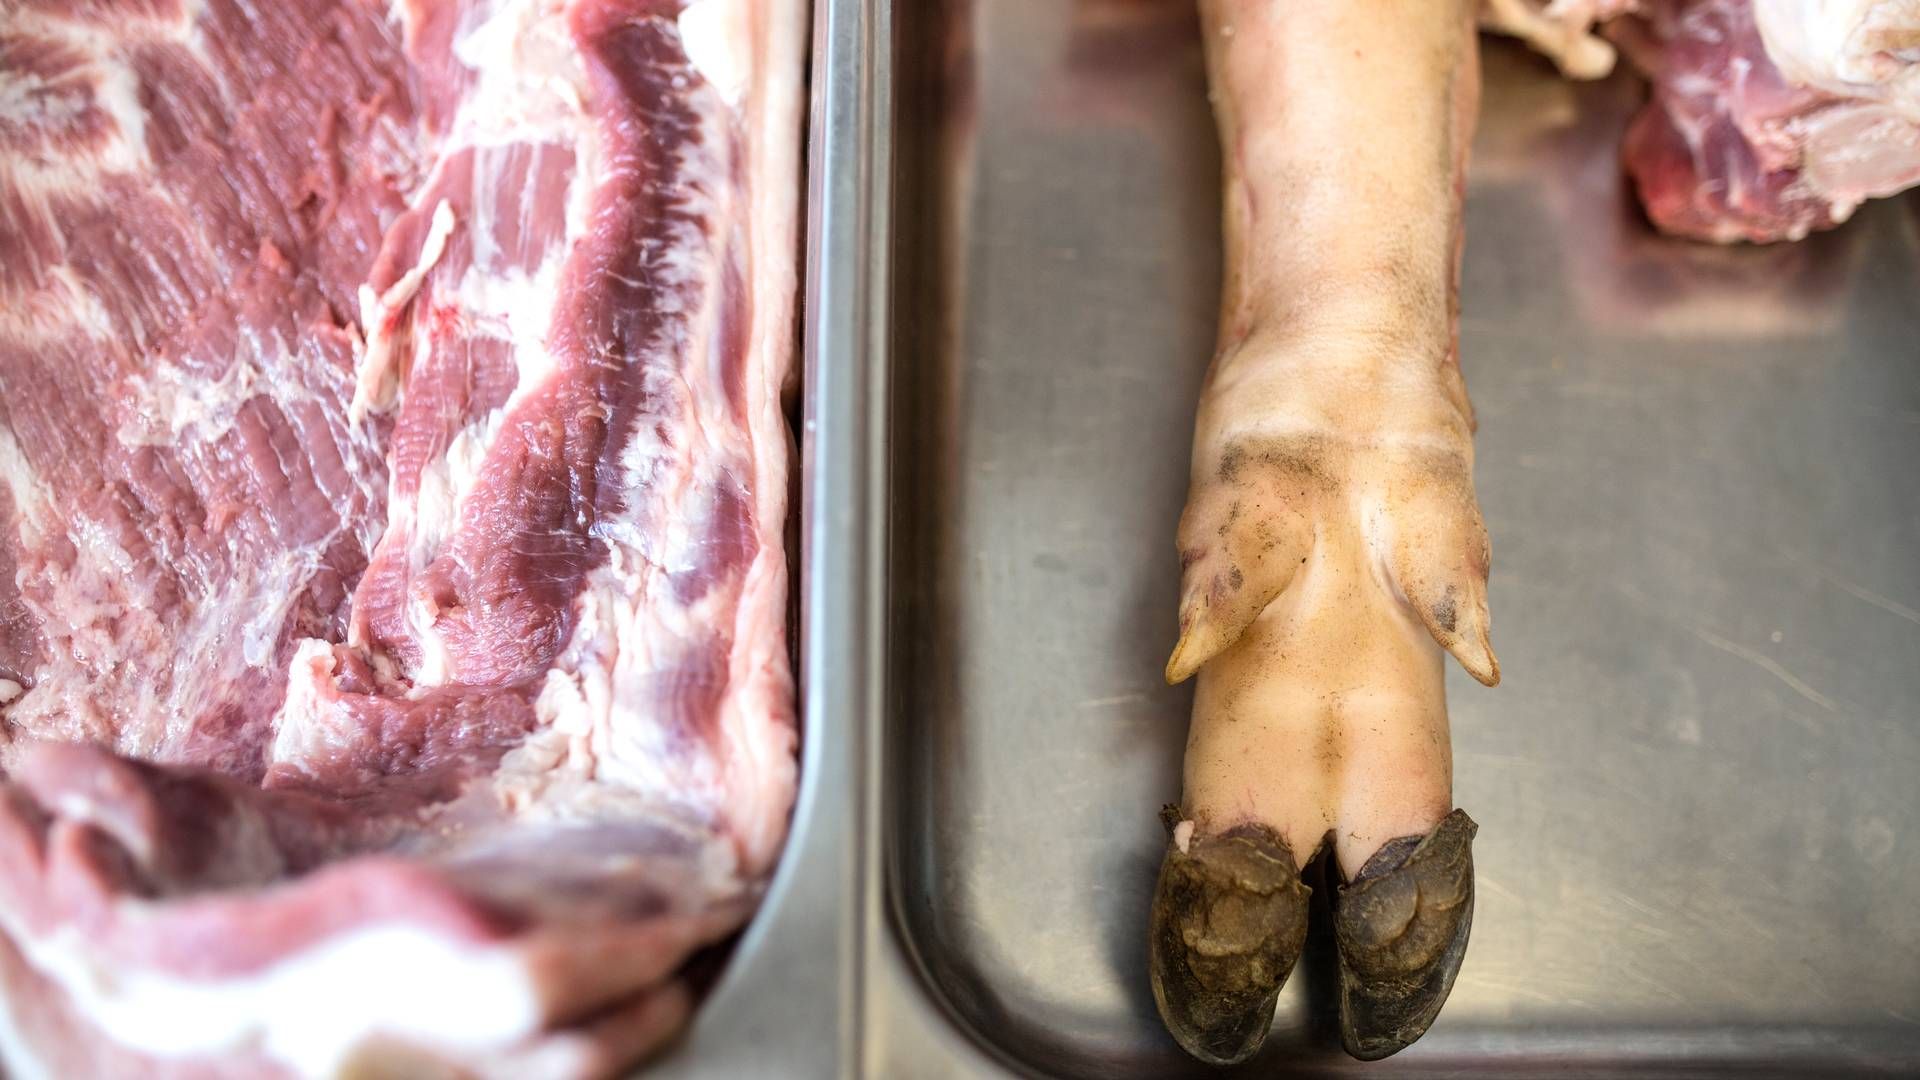 Kina modtager hvert år masser af biprodukter fra den danske slagterisektor såsom tæer og indvolde. | Foto: Ivan Boll